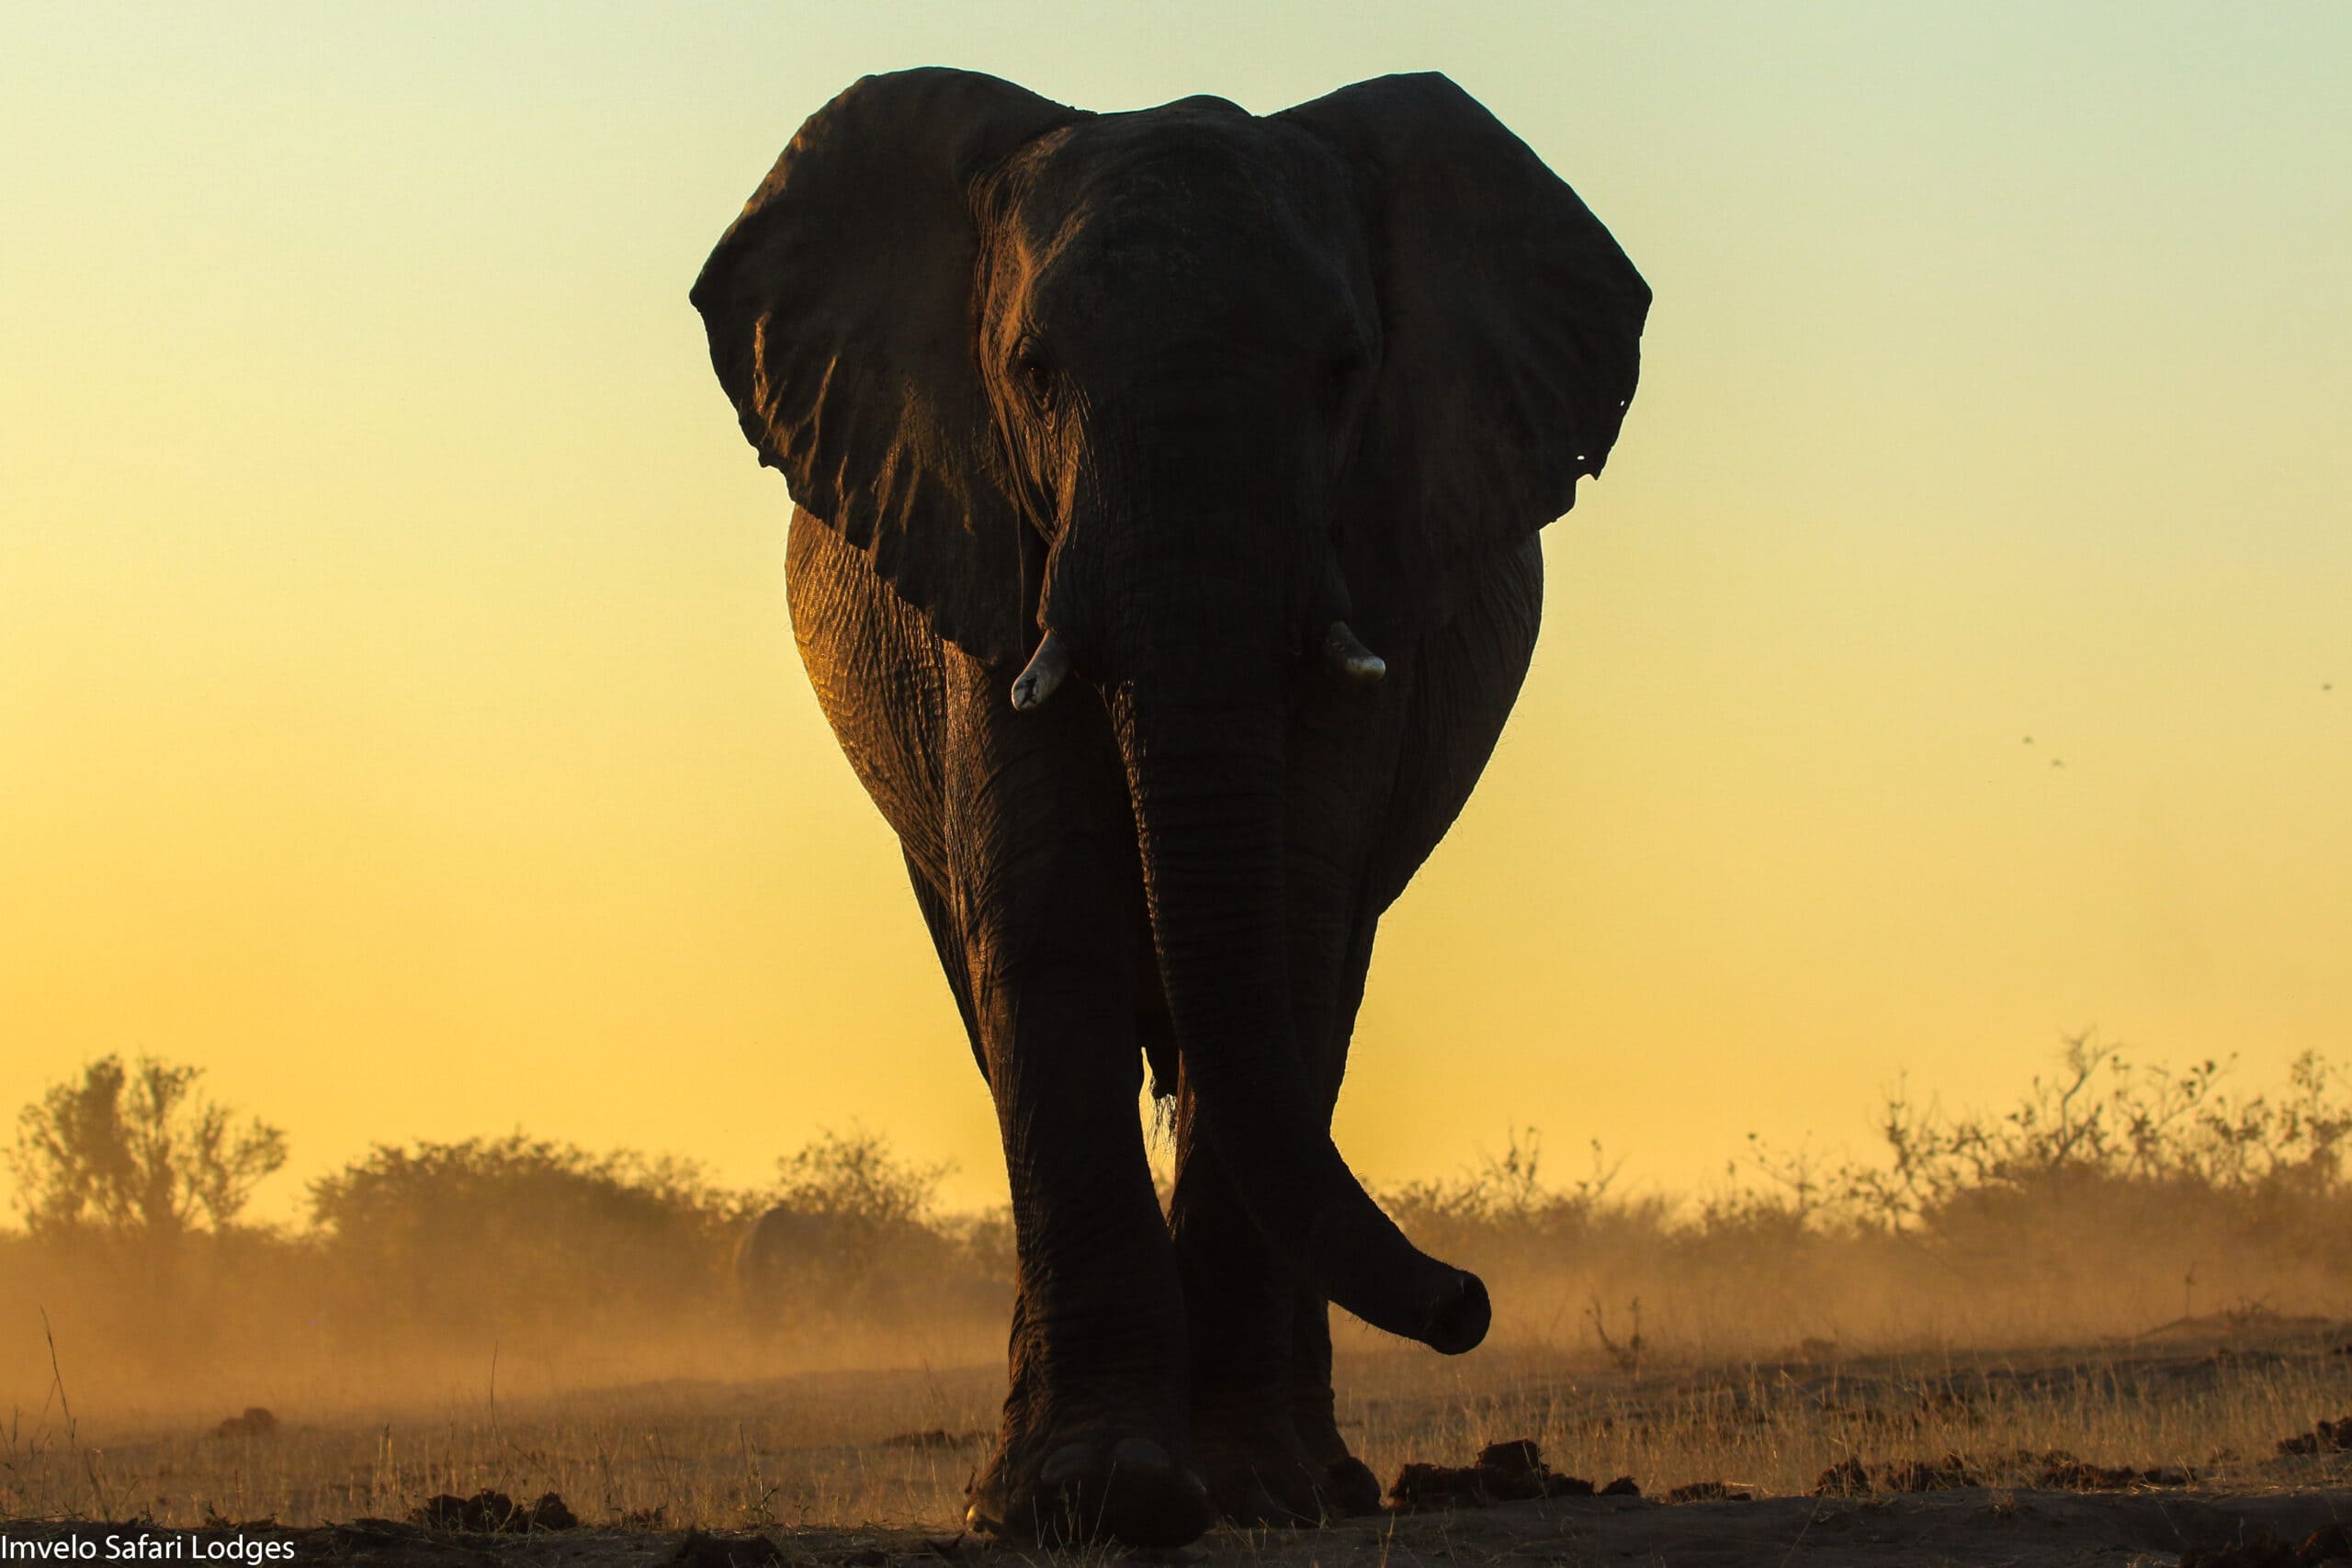 36c.Imvelo Safari Lodges Nehimba Elephant at sunset scaled